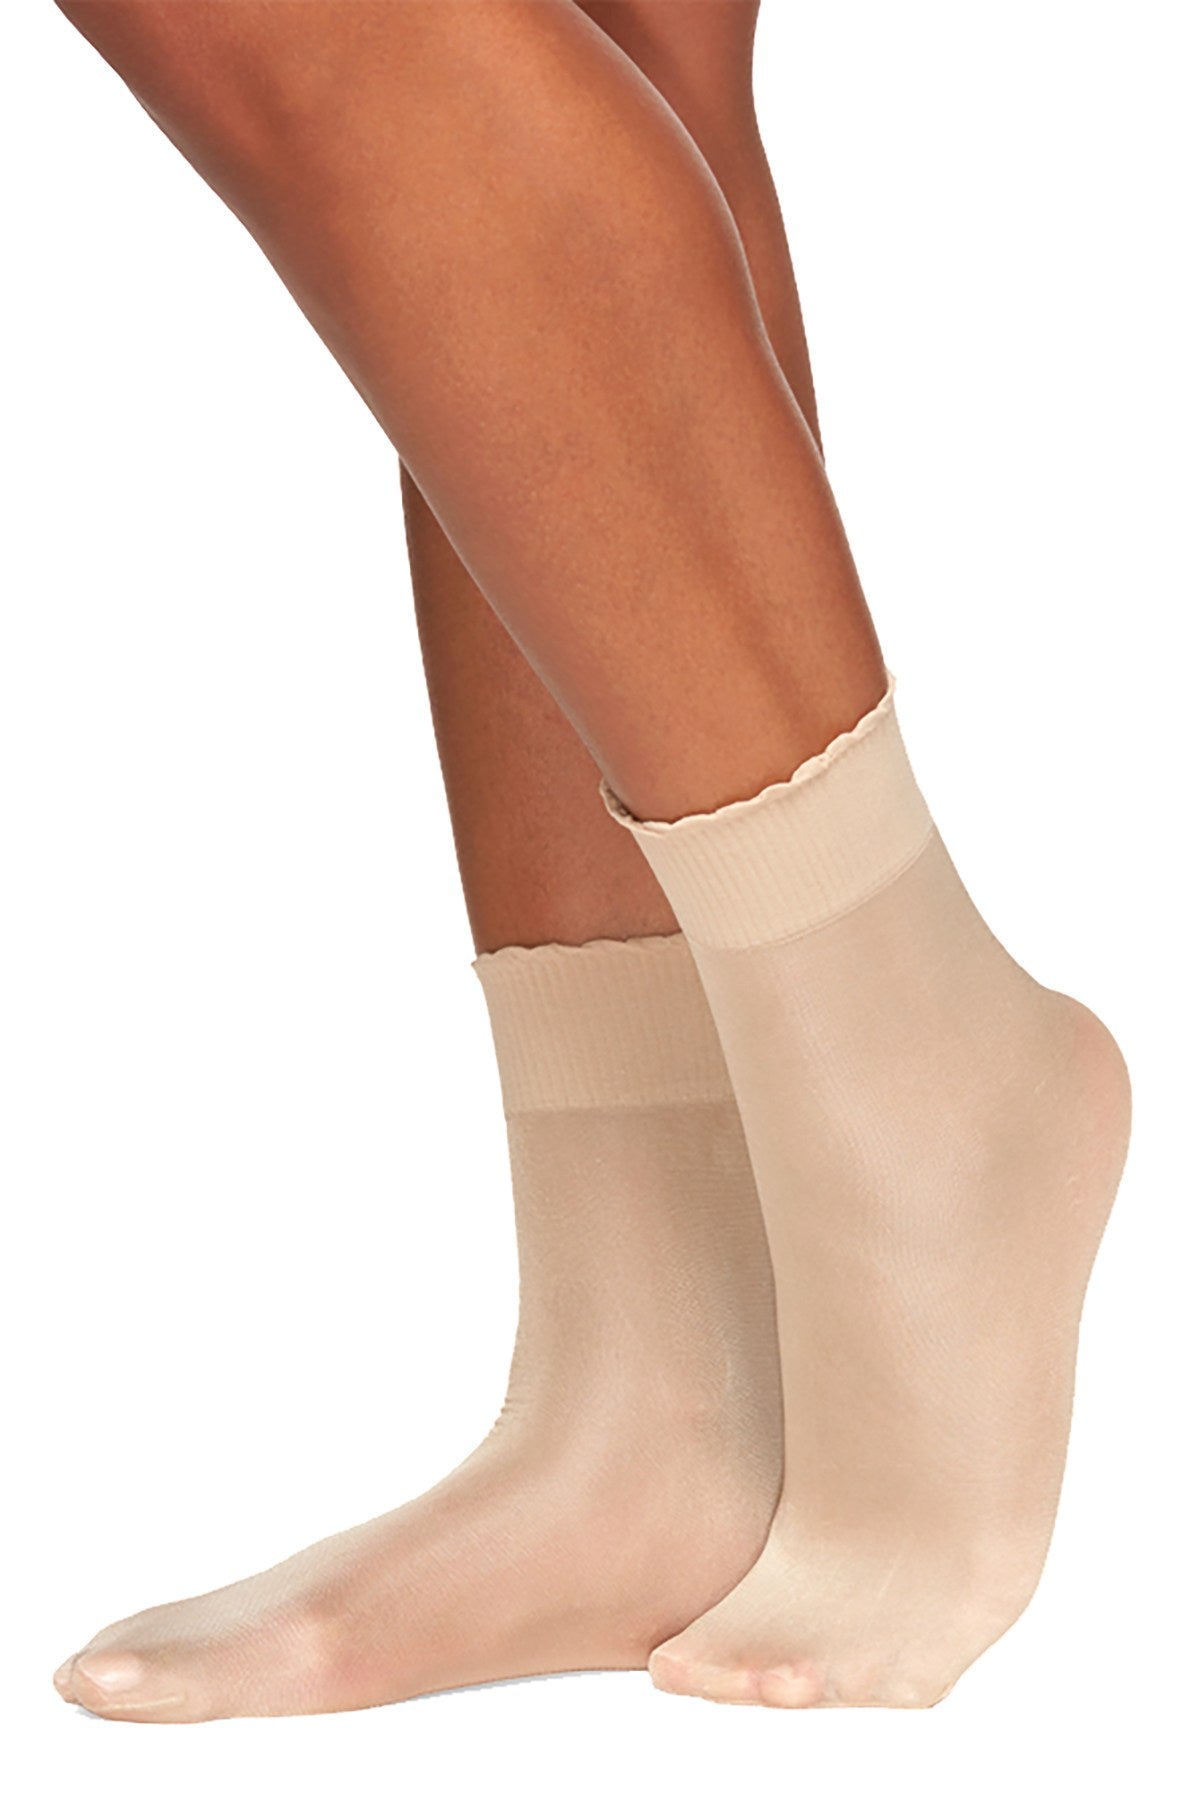 Berkshire Hosiery Trend Shimmer Anklet Socks in Candlelight